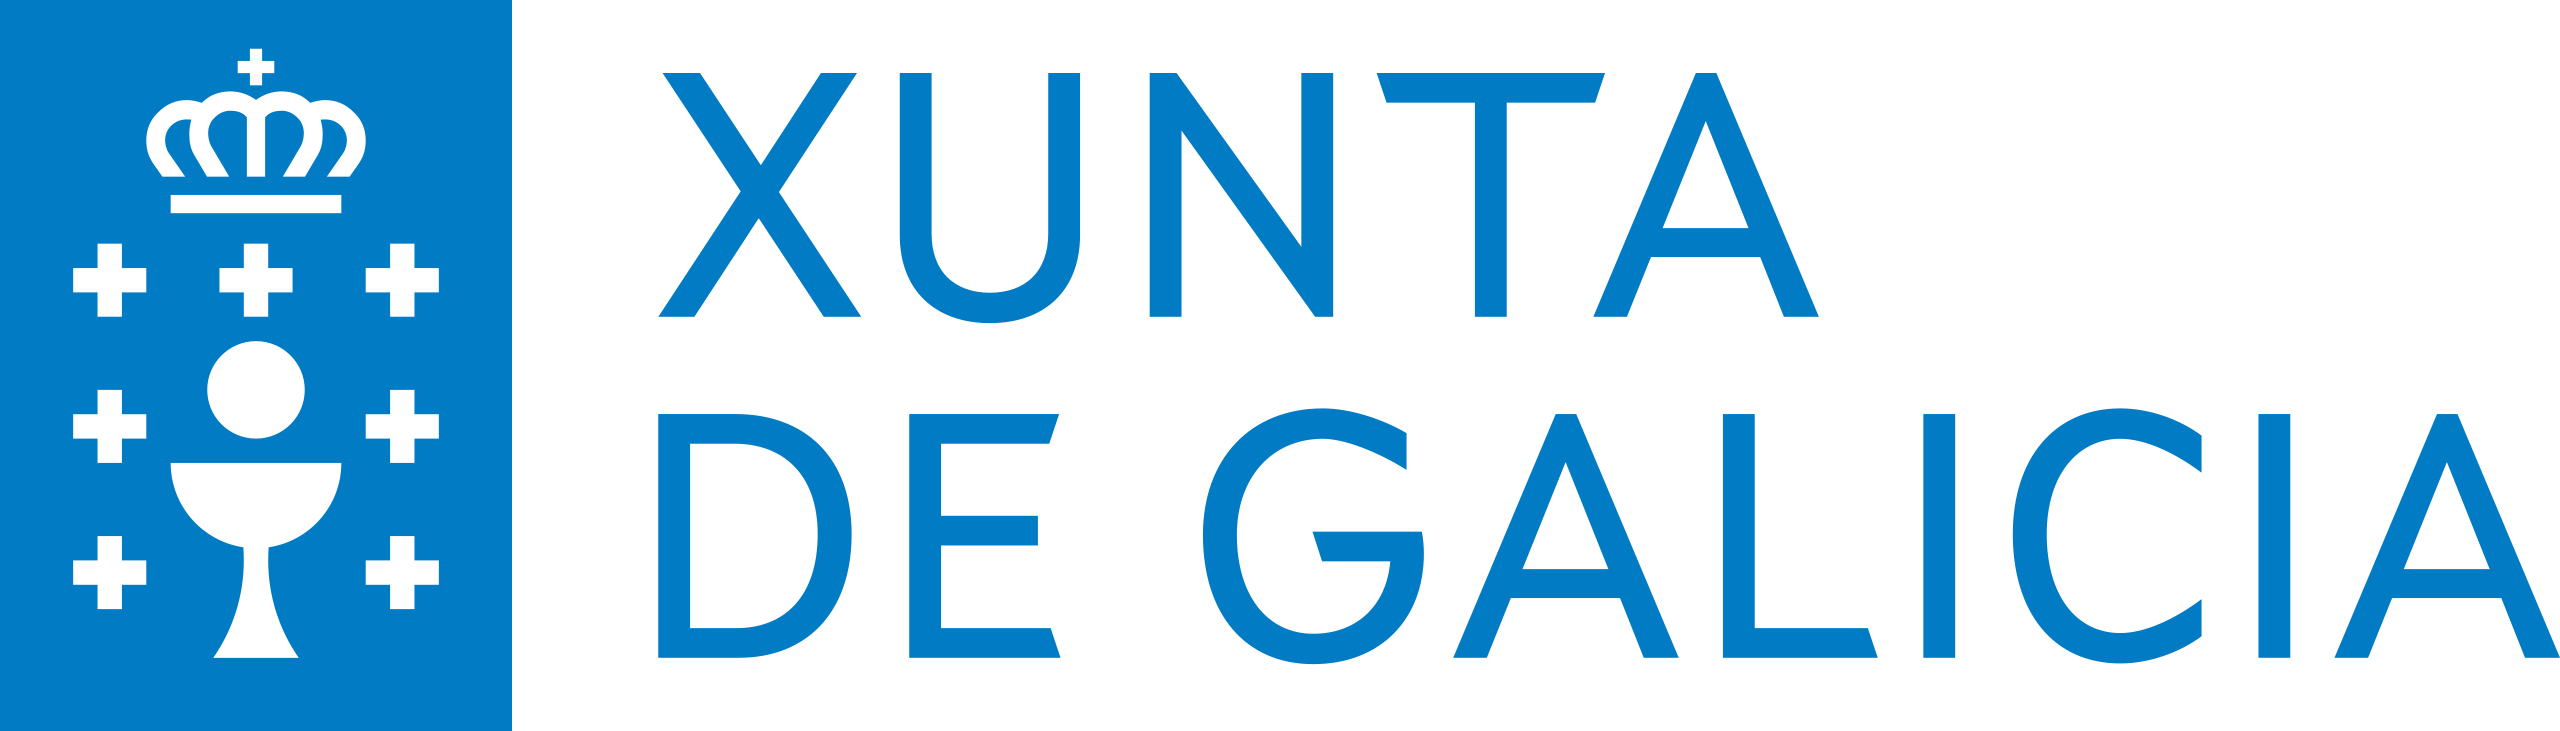 Logo da Xunta de Galicia 2021 .svg 1